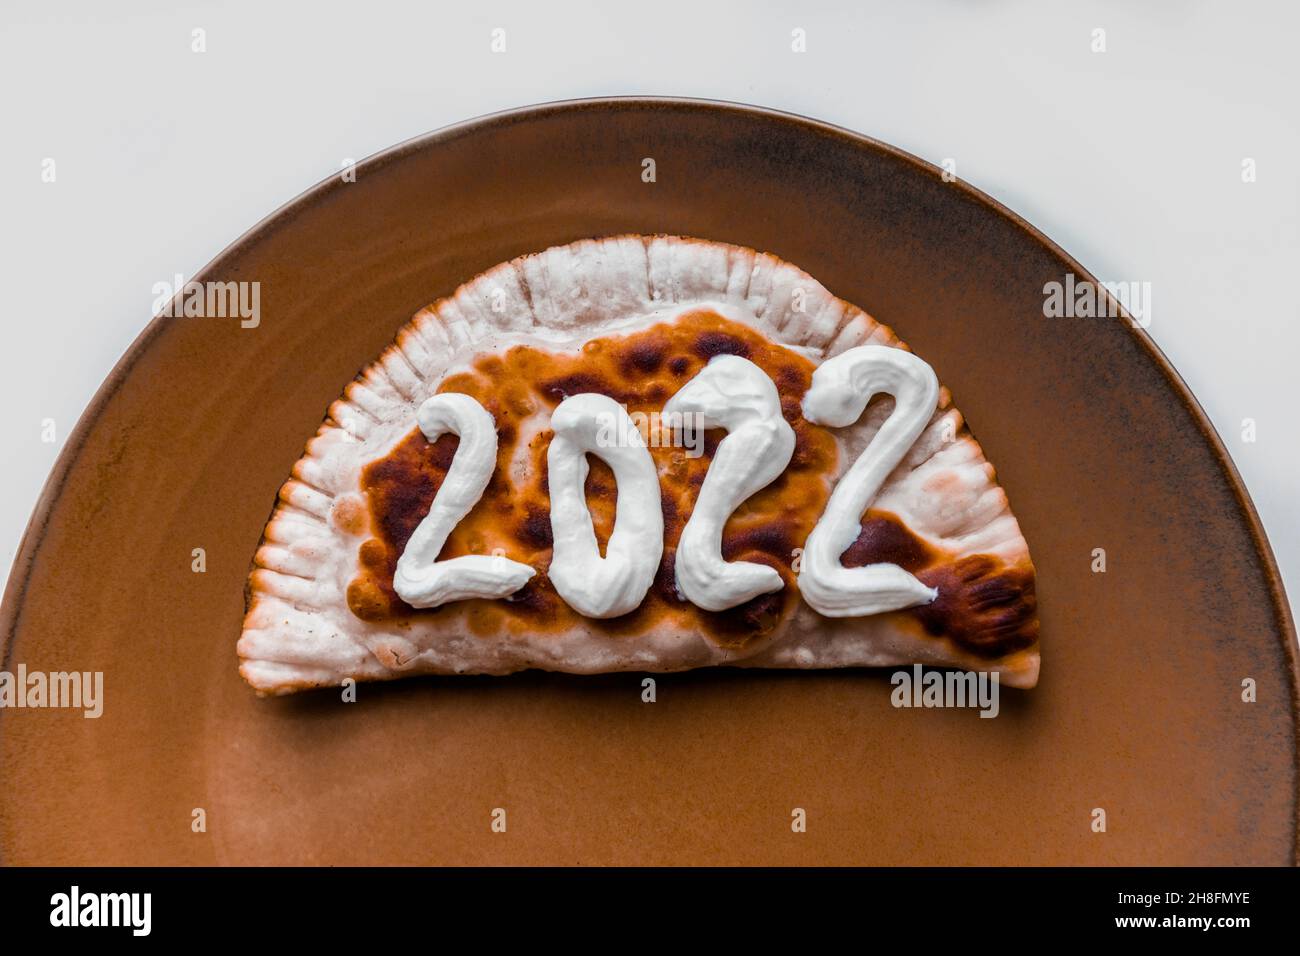 Le numéro 2022 est écrit sur un chebureau.Nouvelle année 2022 bientôt disponible. Banque D'Images